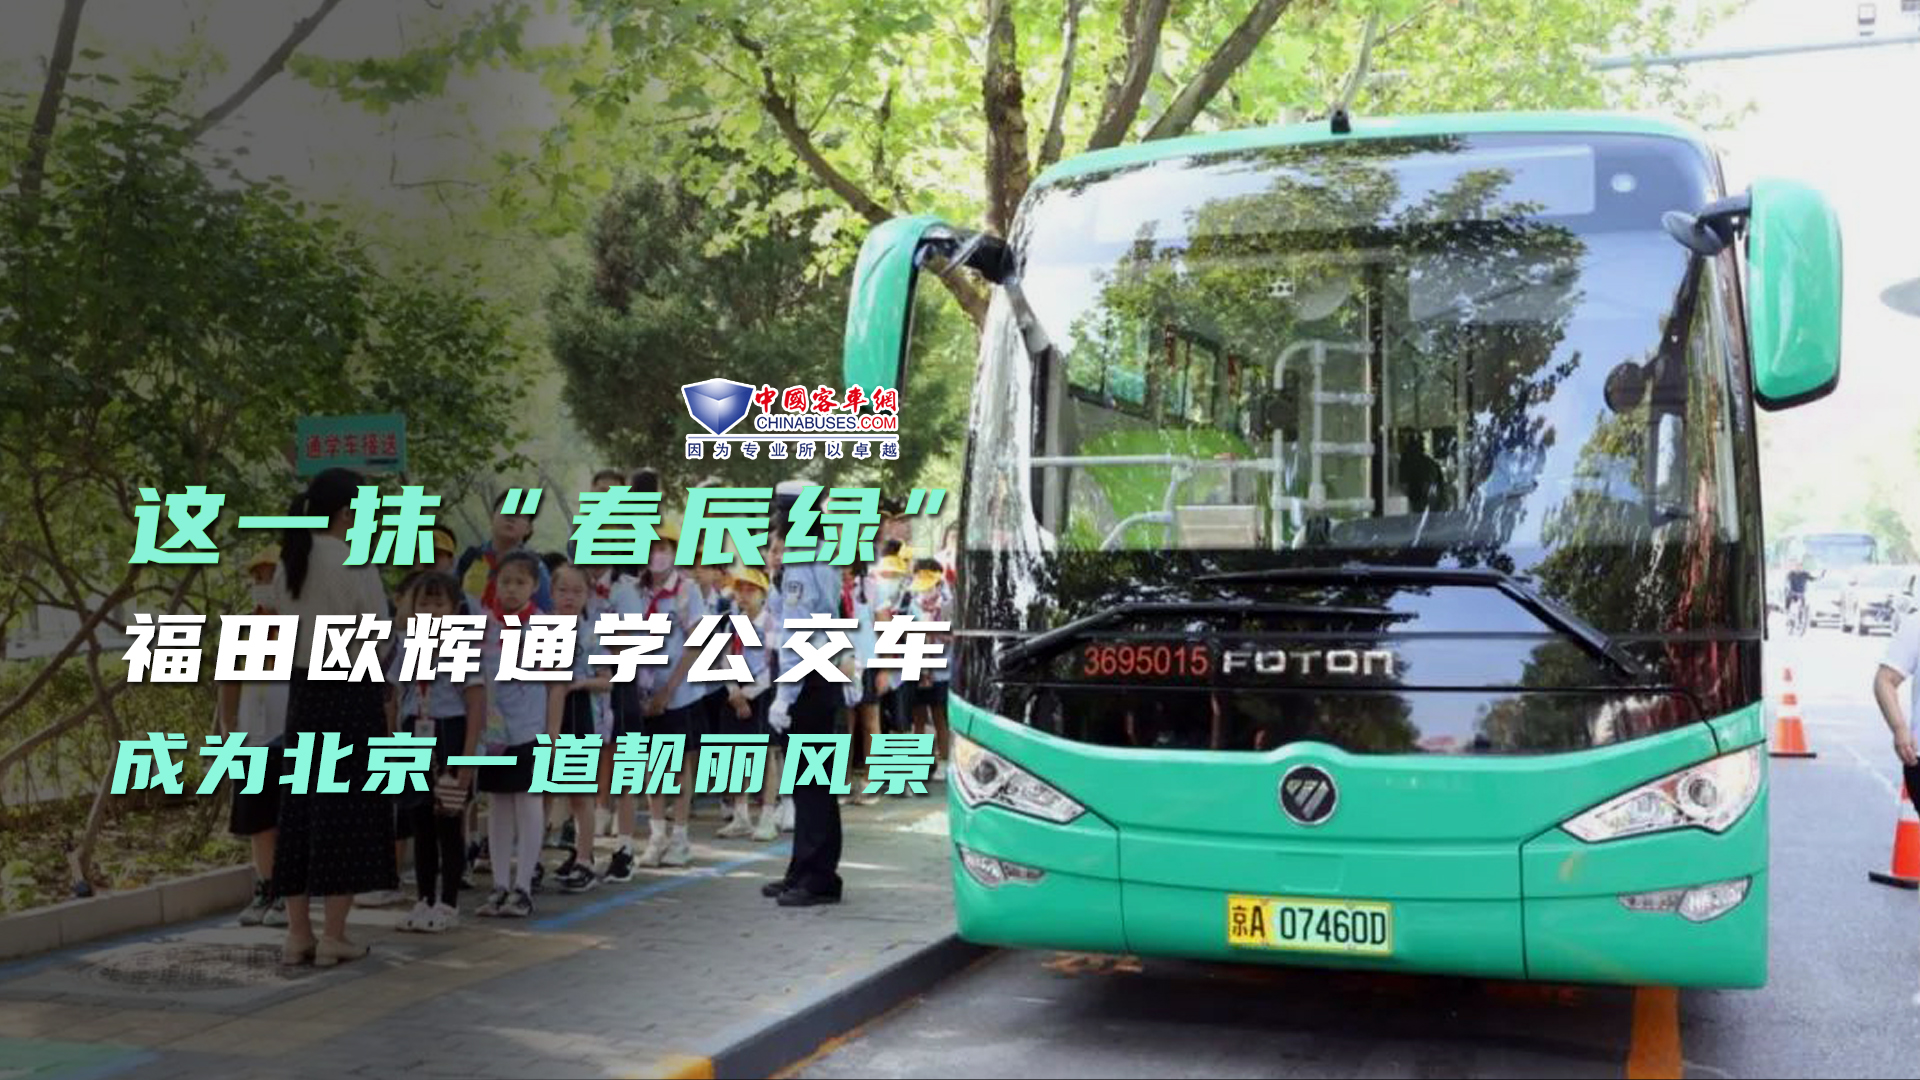 全方位保障安全的“春辰绿”福田欧辉通学公交车成为一道靓丽风景